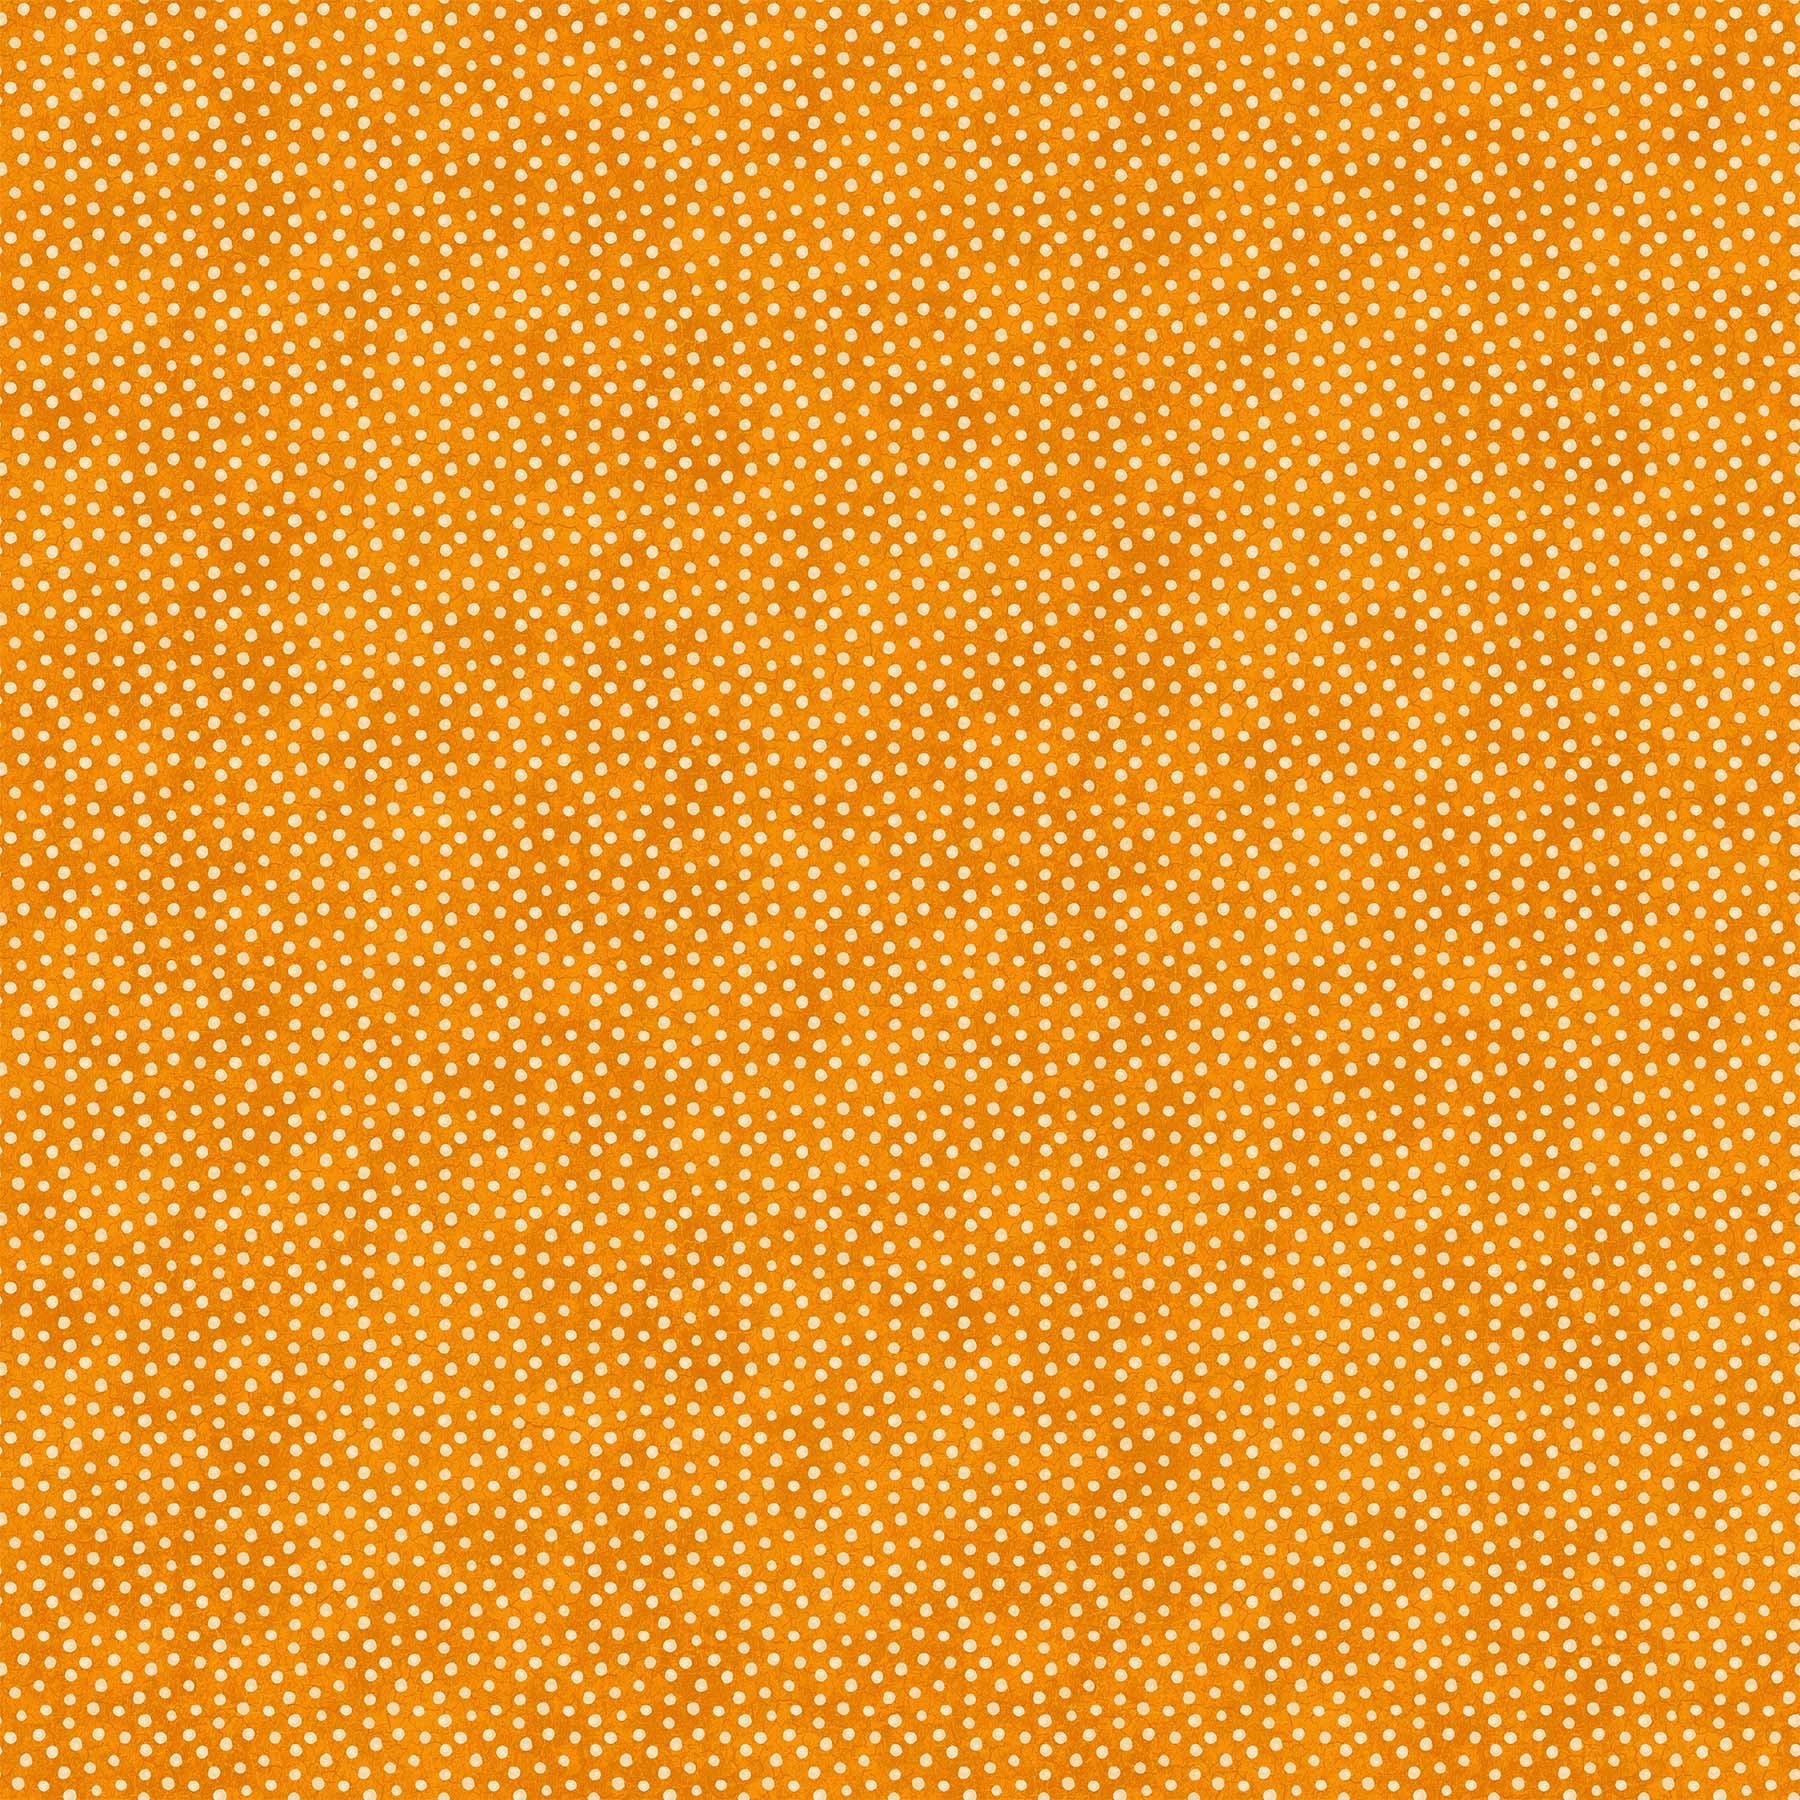 CANDELABRA Dots orange